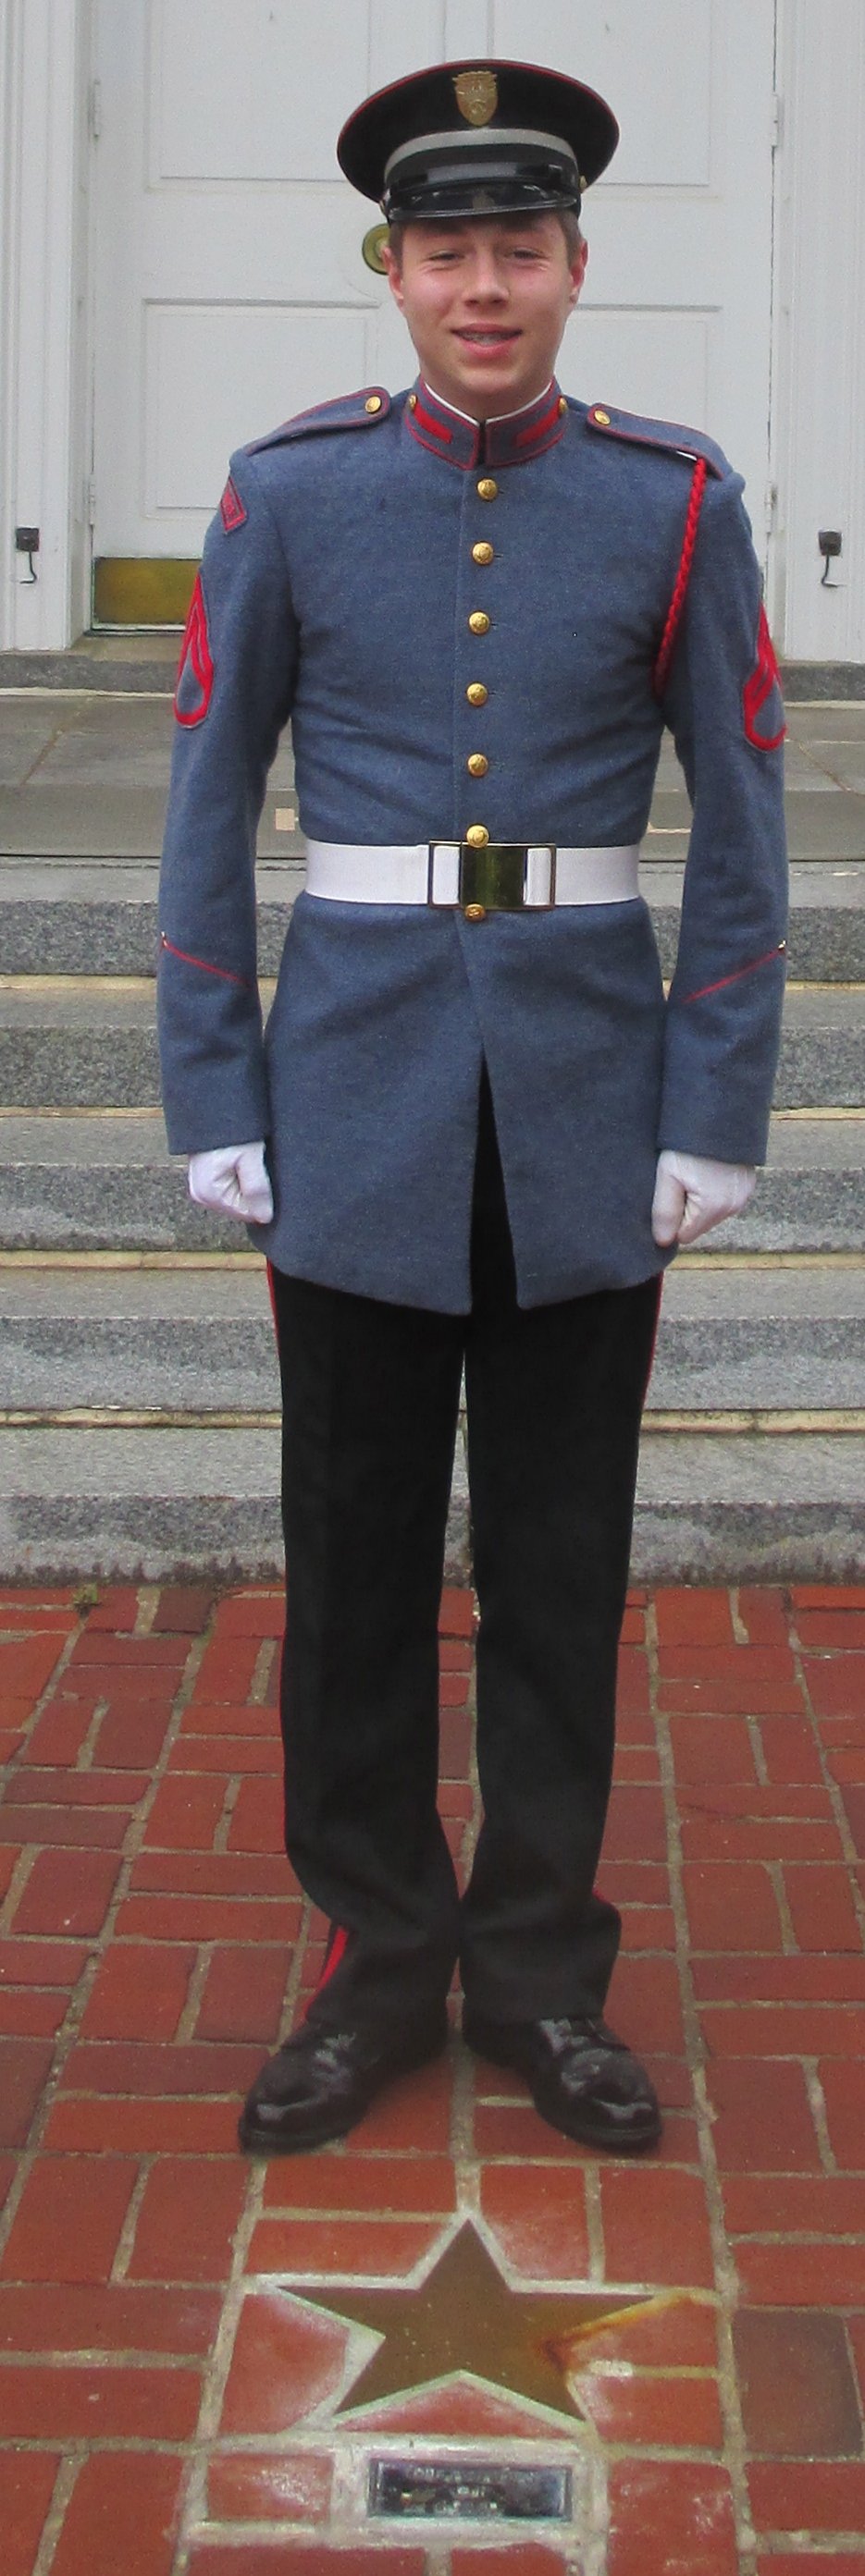 Cadet James Patrick O'Neill